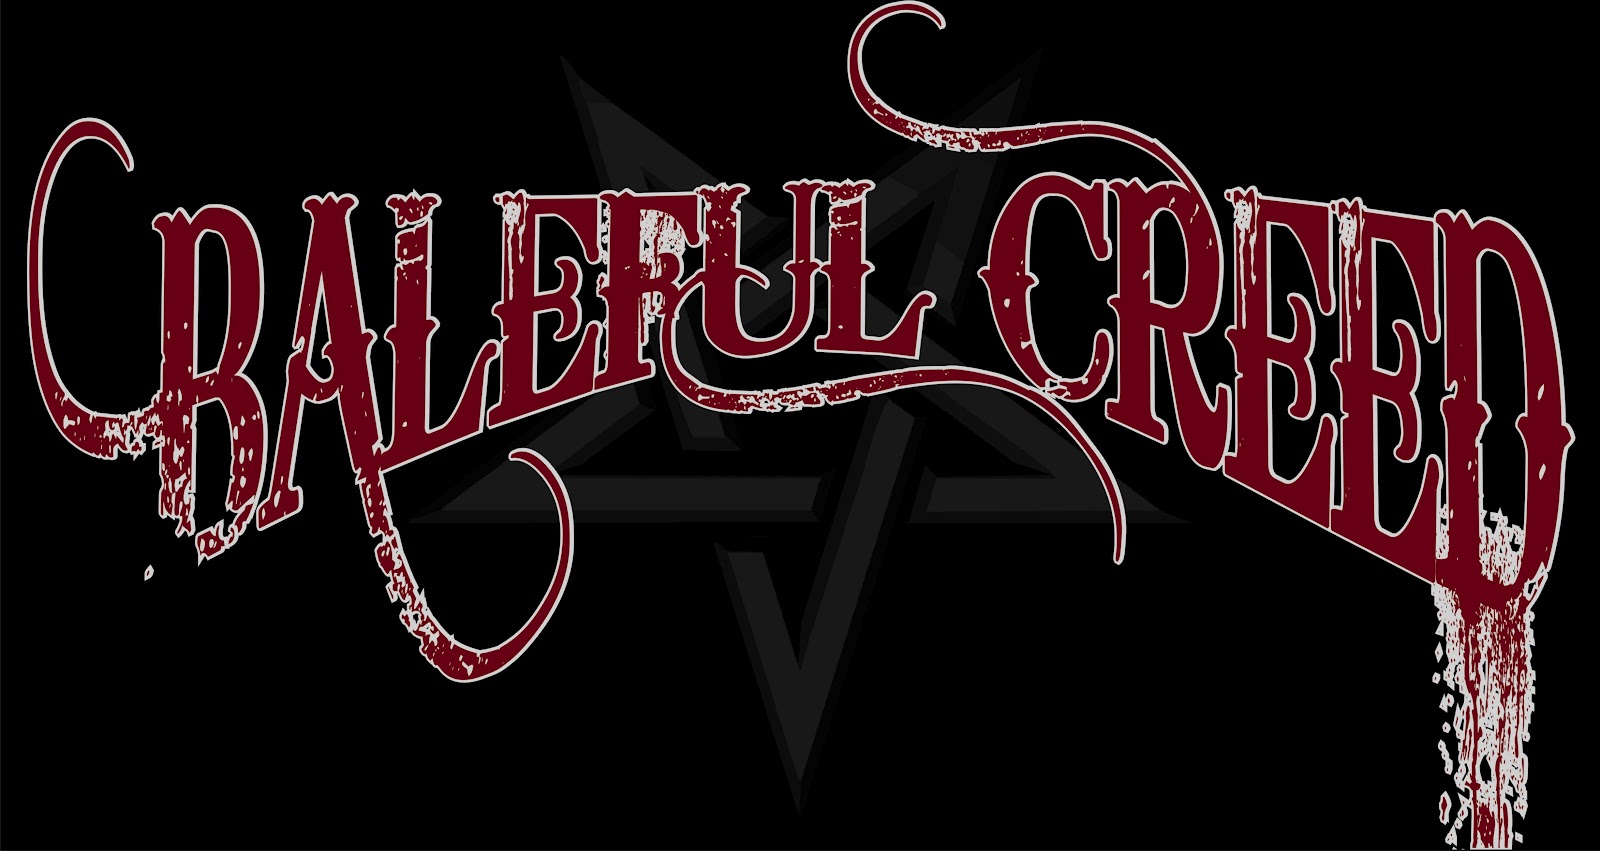 baleful_creed_logo